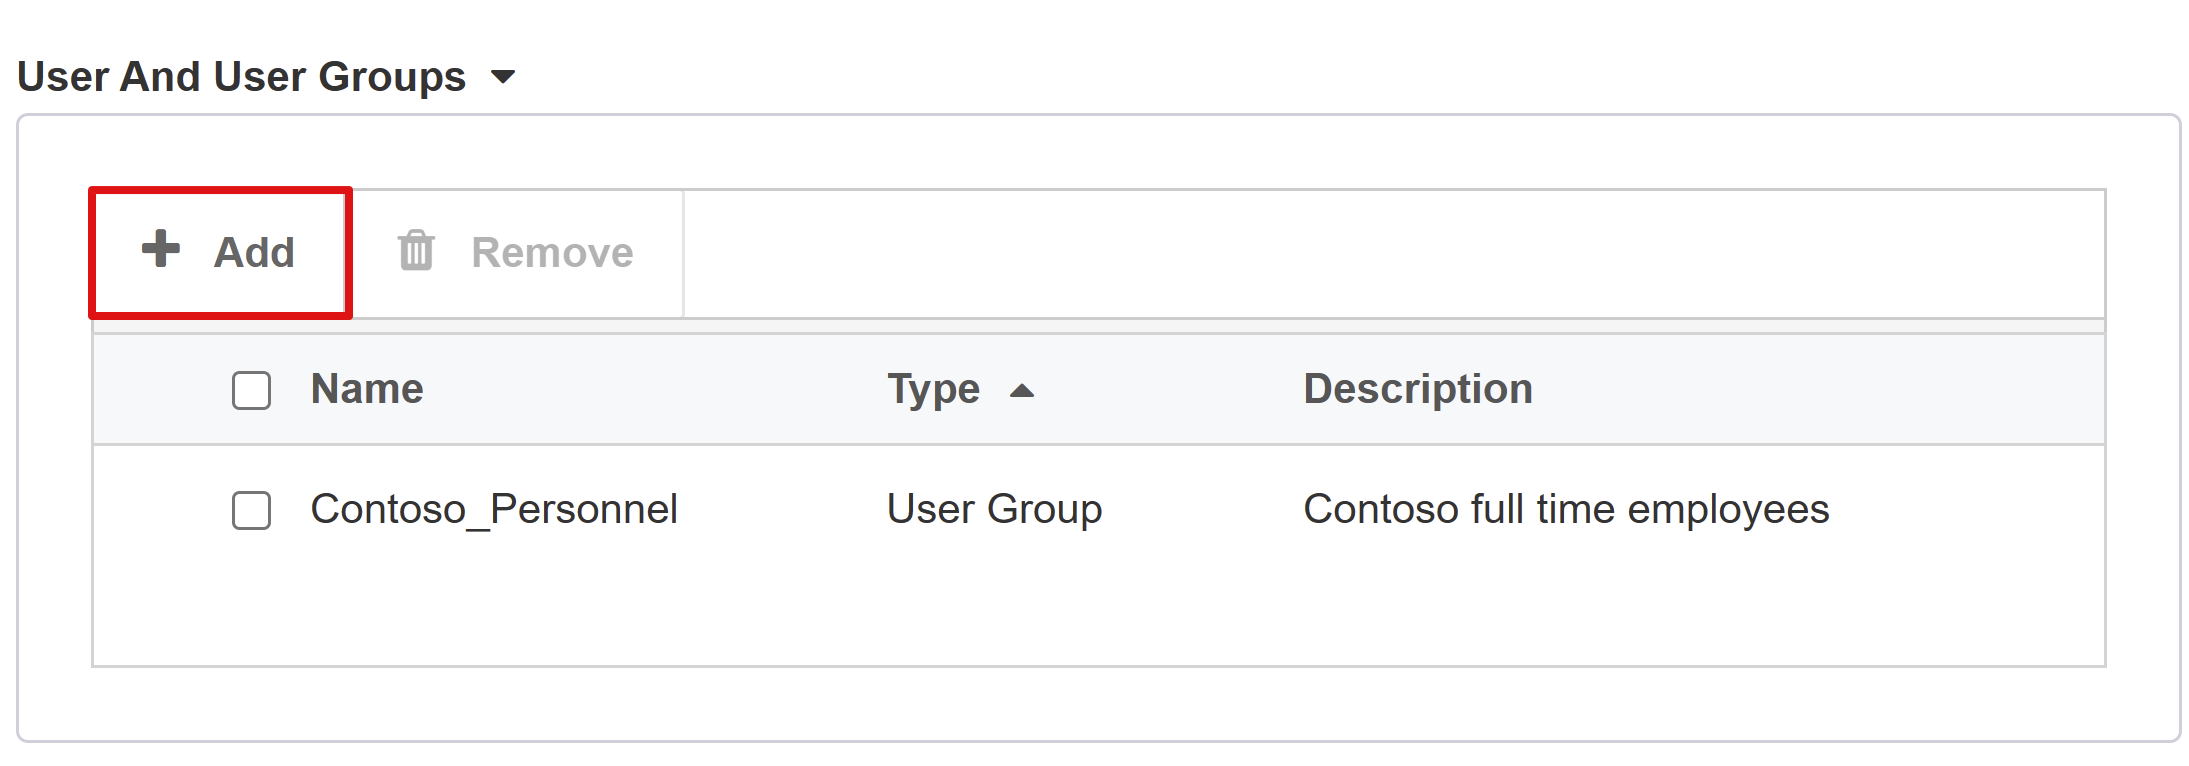 Captura de pantalla de la opción Add (Agregar) en Users And User Groups (Usuarios y grupos de usuarios).